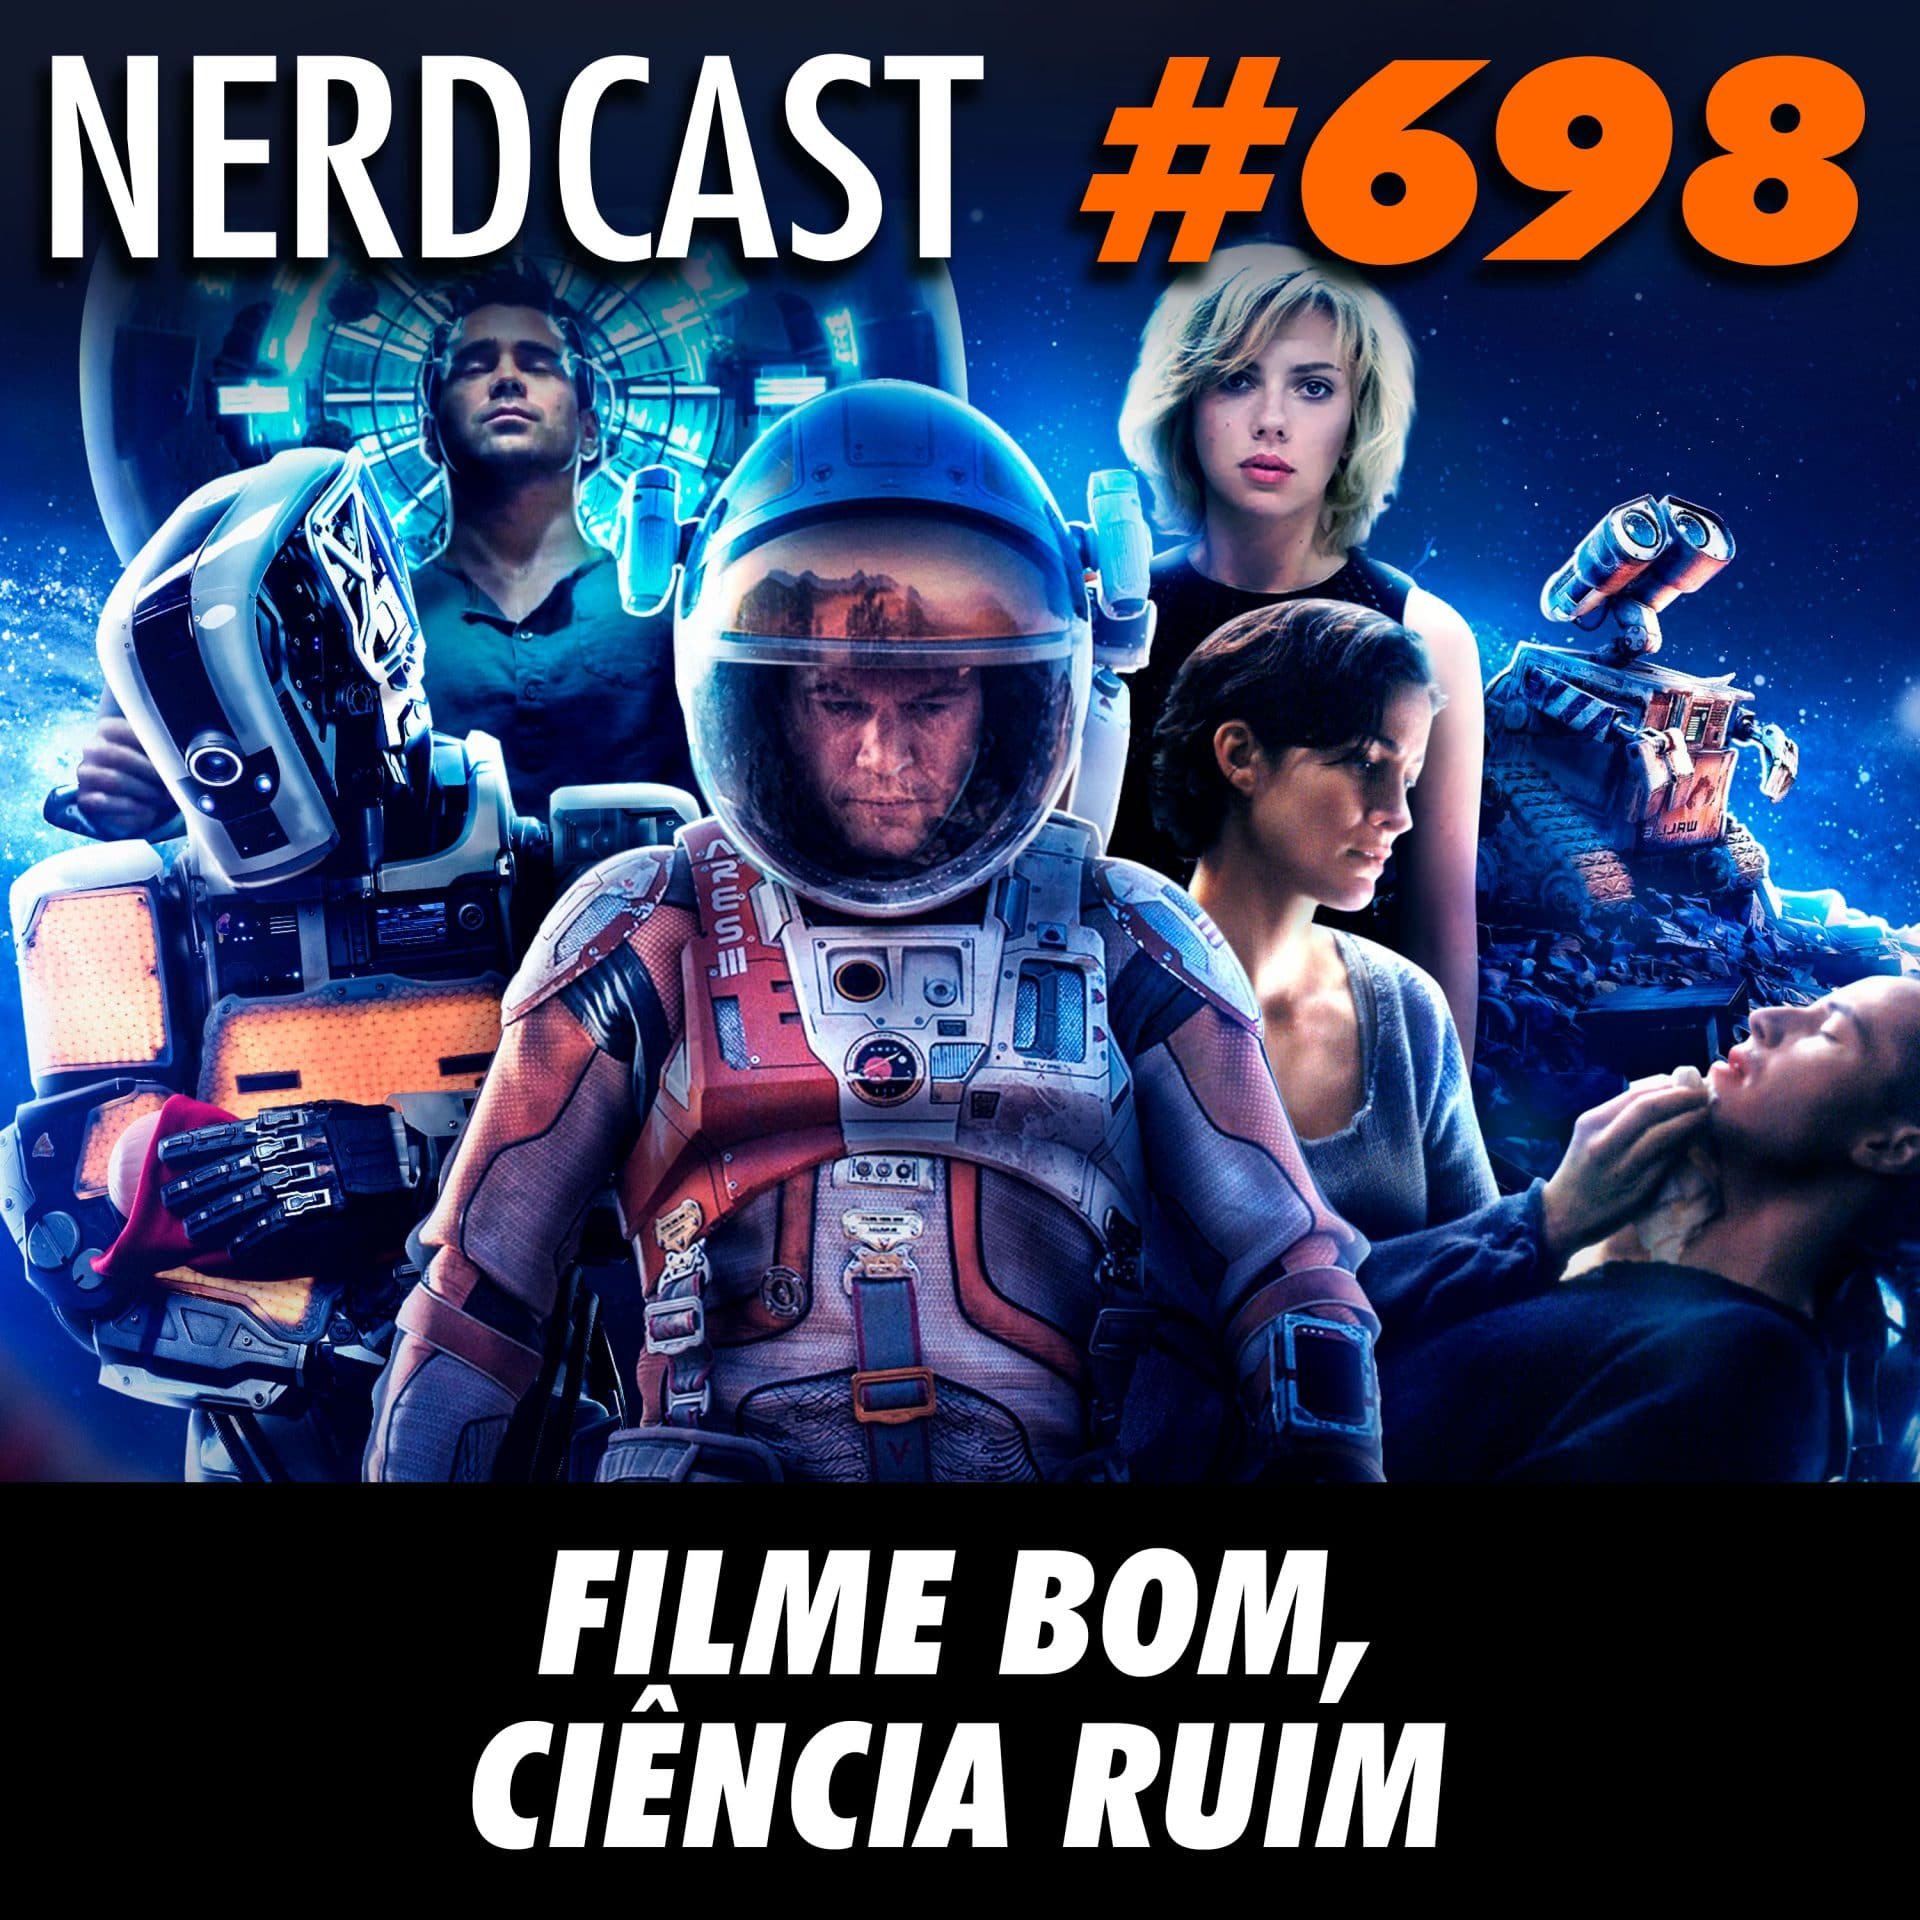 NerdCast 698 - Filme bom, ciência ruim